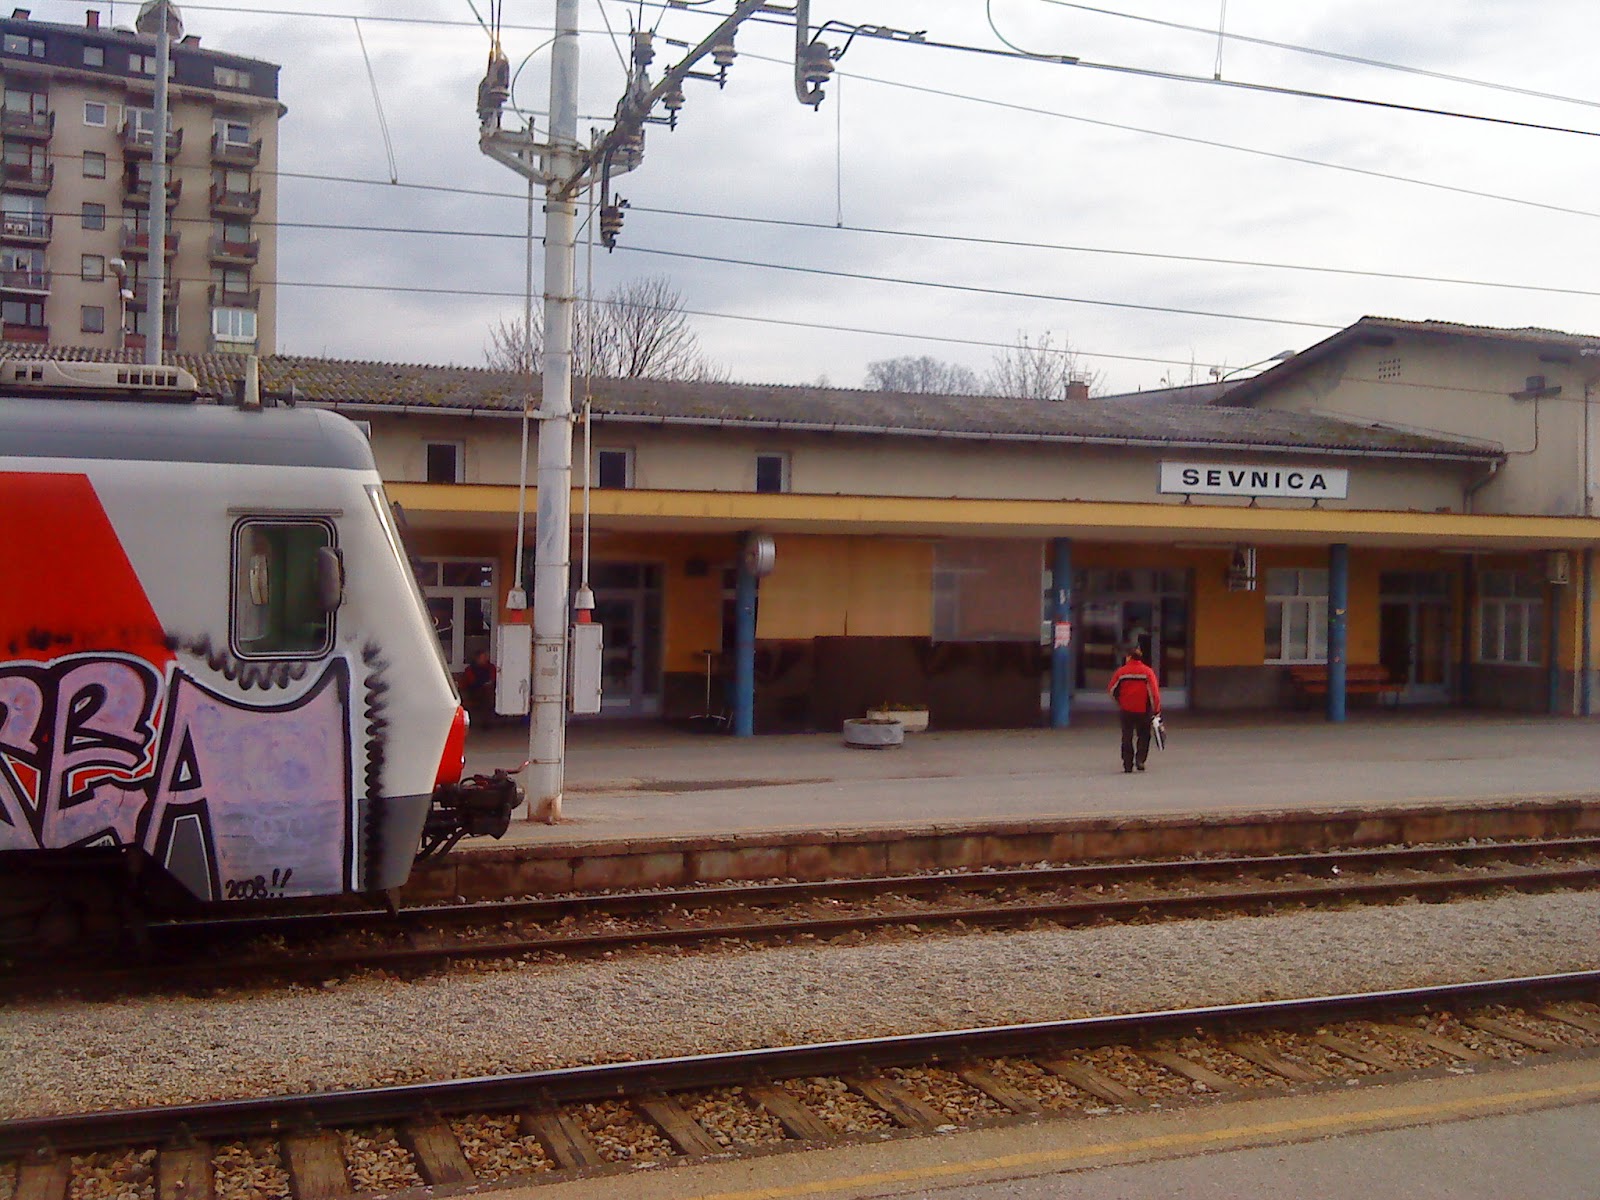 European train station 